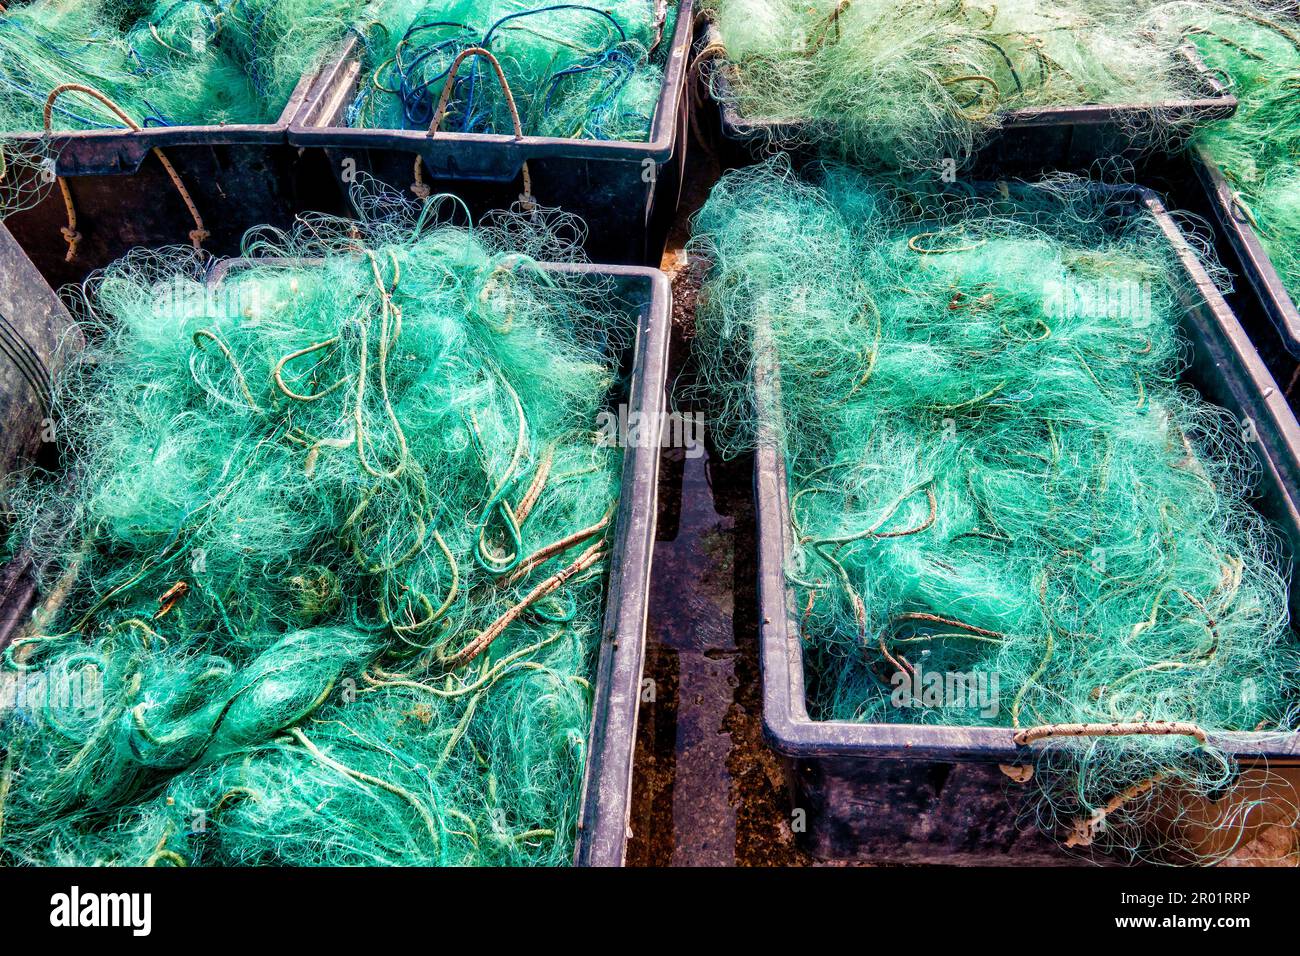 Fischernetze, die im Hafen von Pescara, Italien, zum Trocknen zurückgelassen wurden Stockfoto